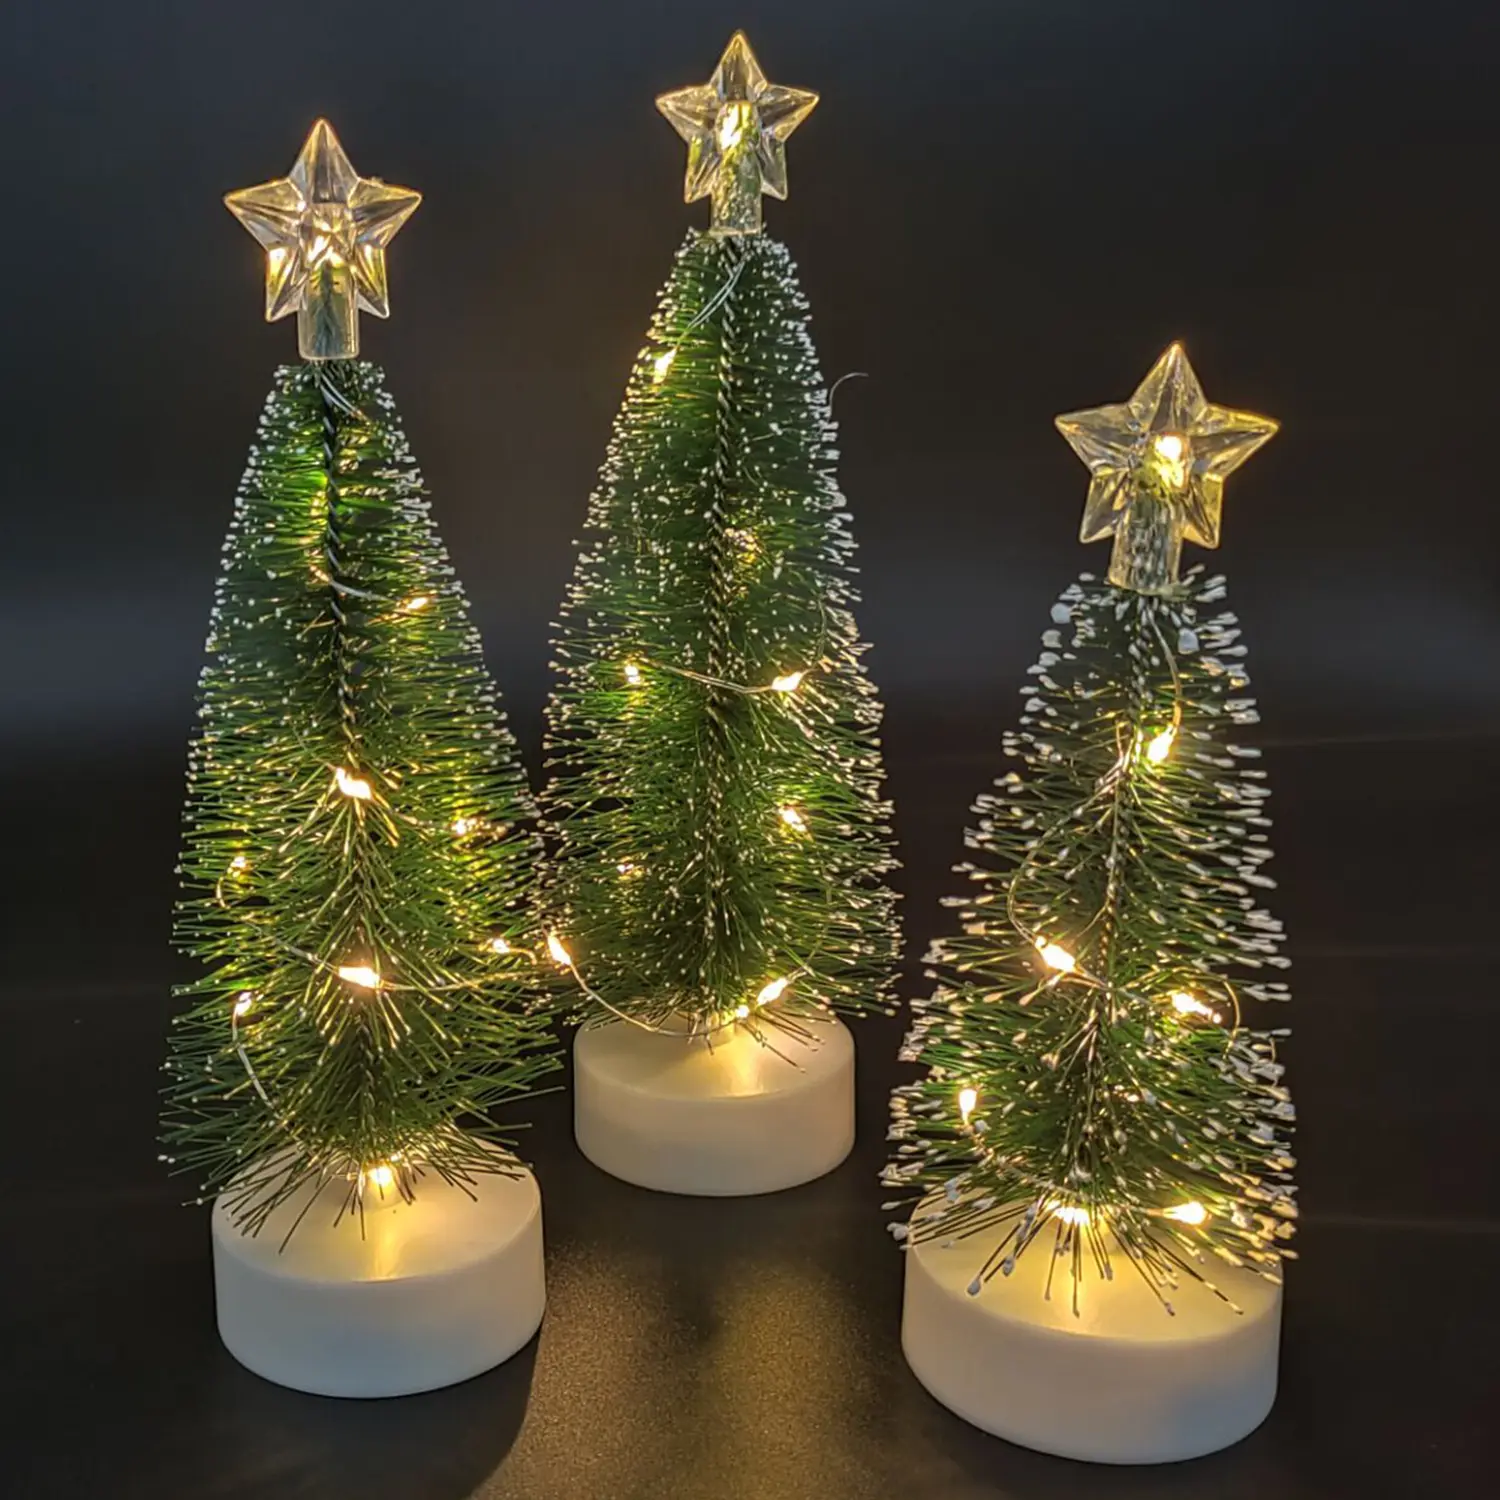 O19s árvore de natal, árvore de natal branca artificial com luzes led, à venda, luz quente, decorações para feliz natal